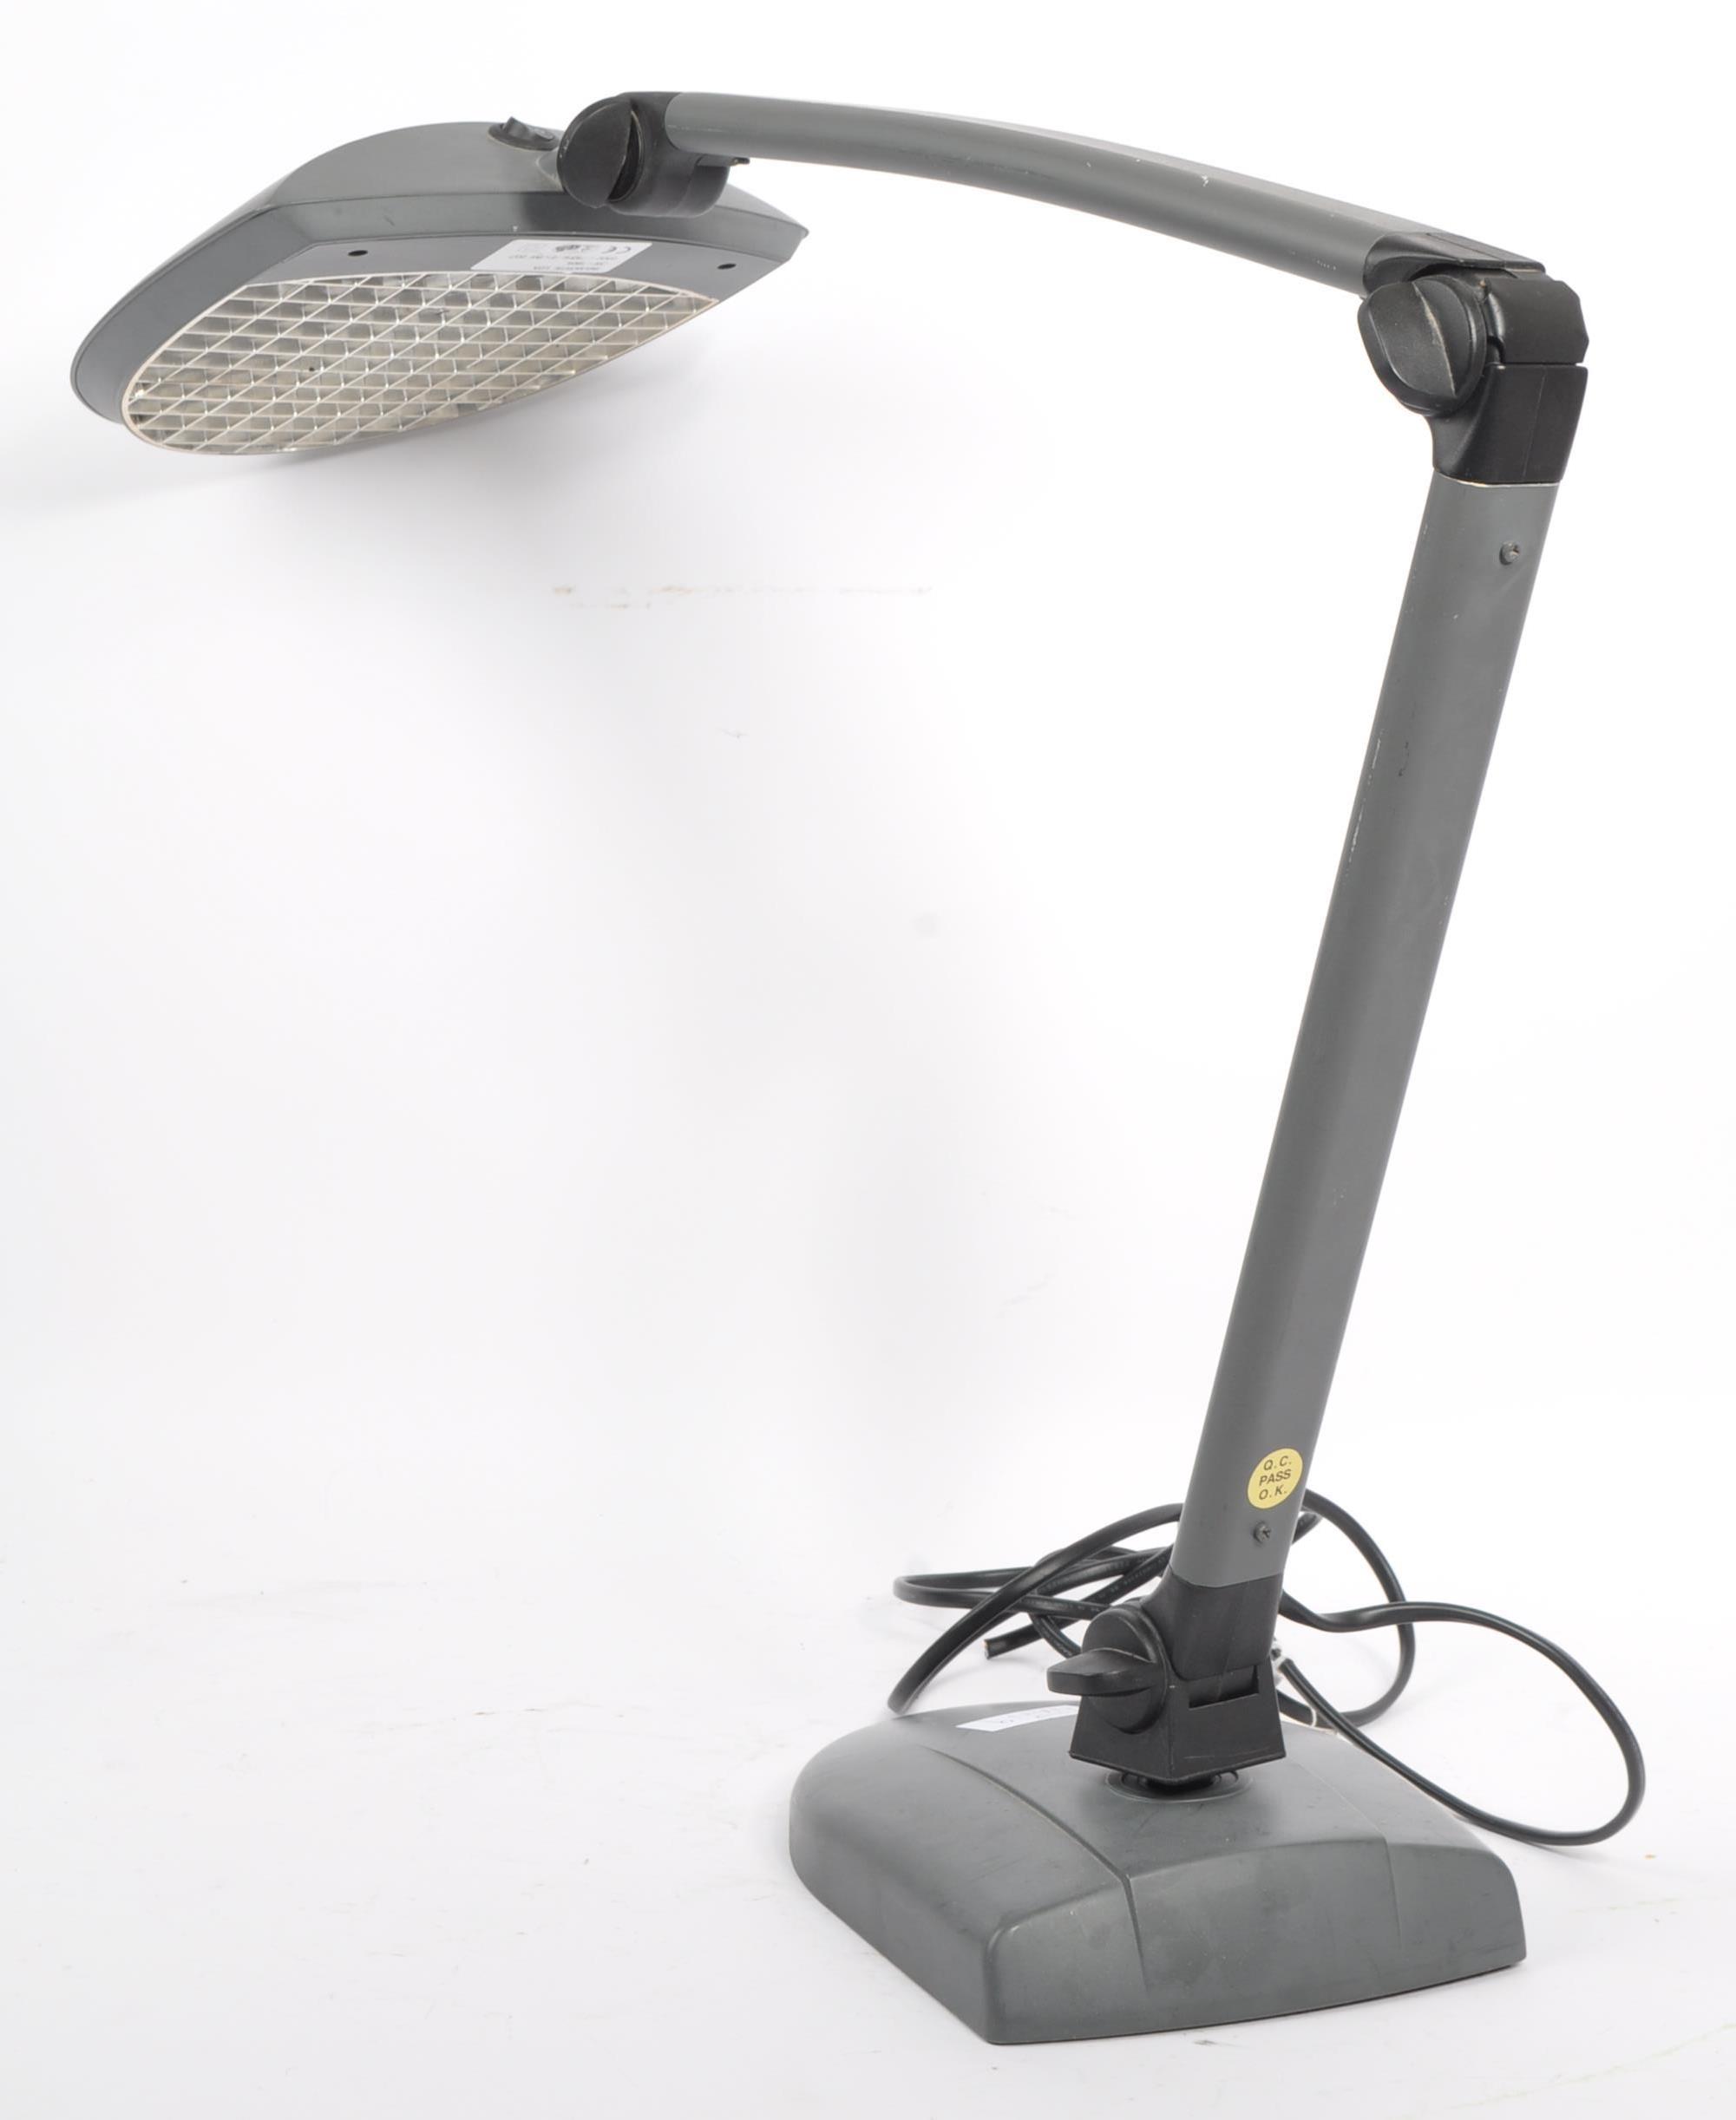 1990S DESIGNER ARTICULATED DESK LAMP - Image 4 of 6